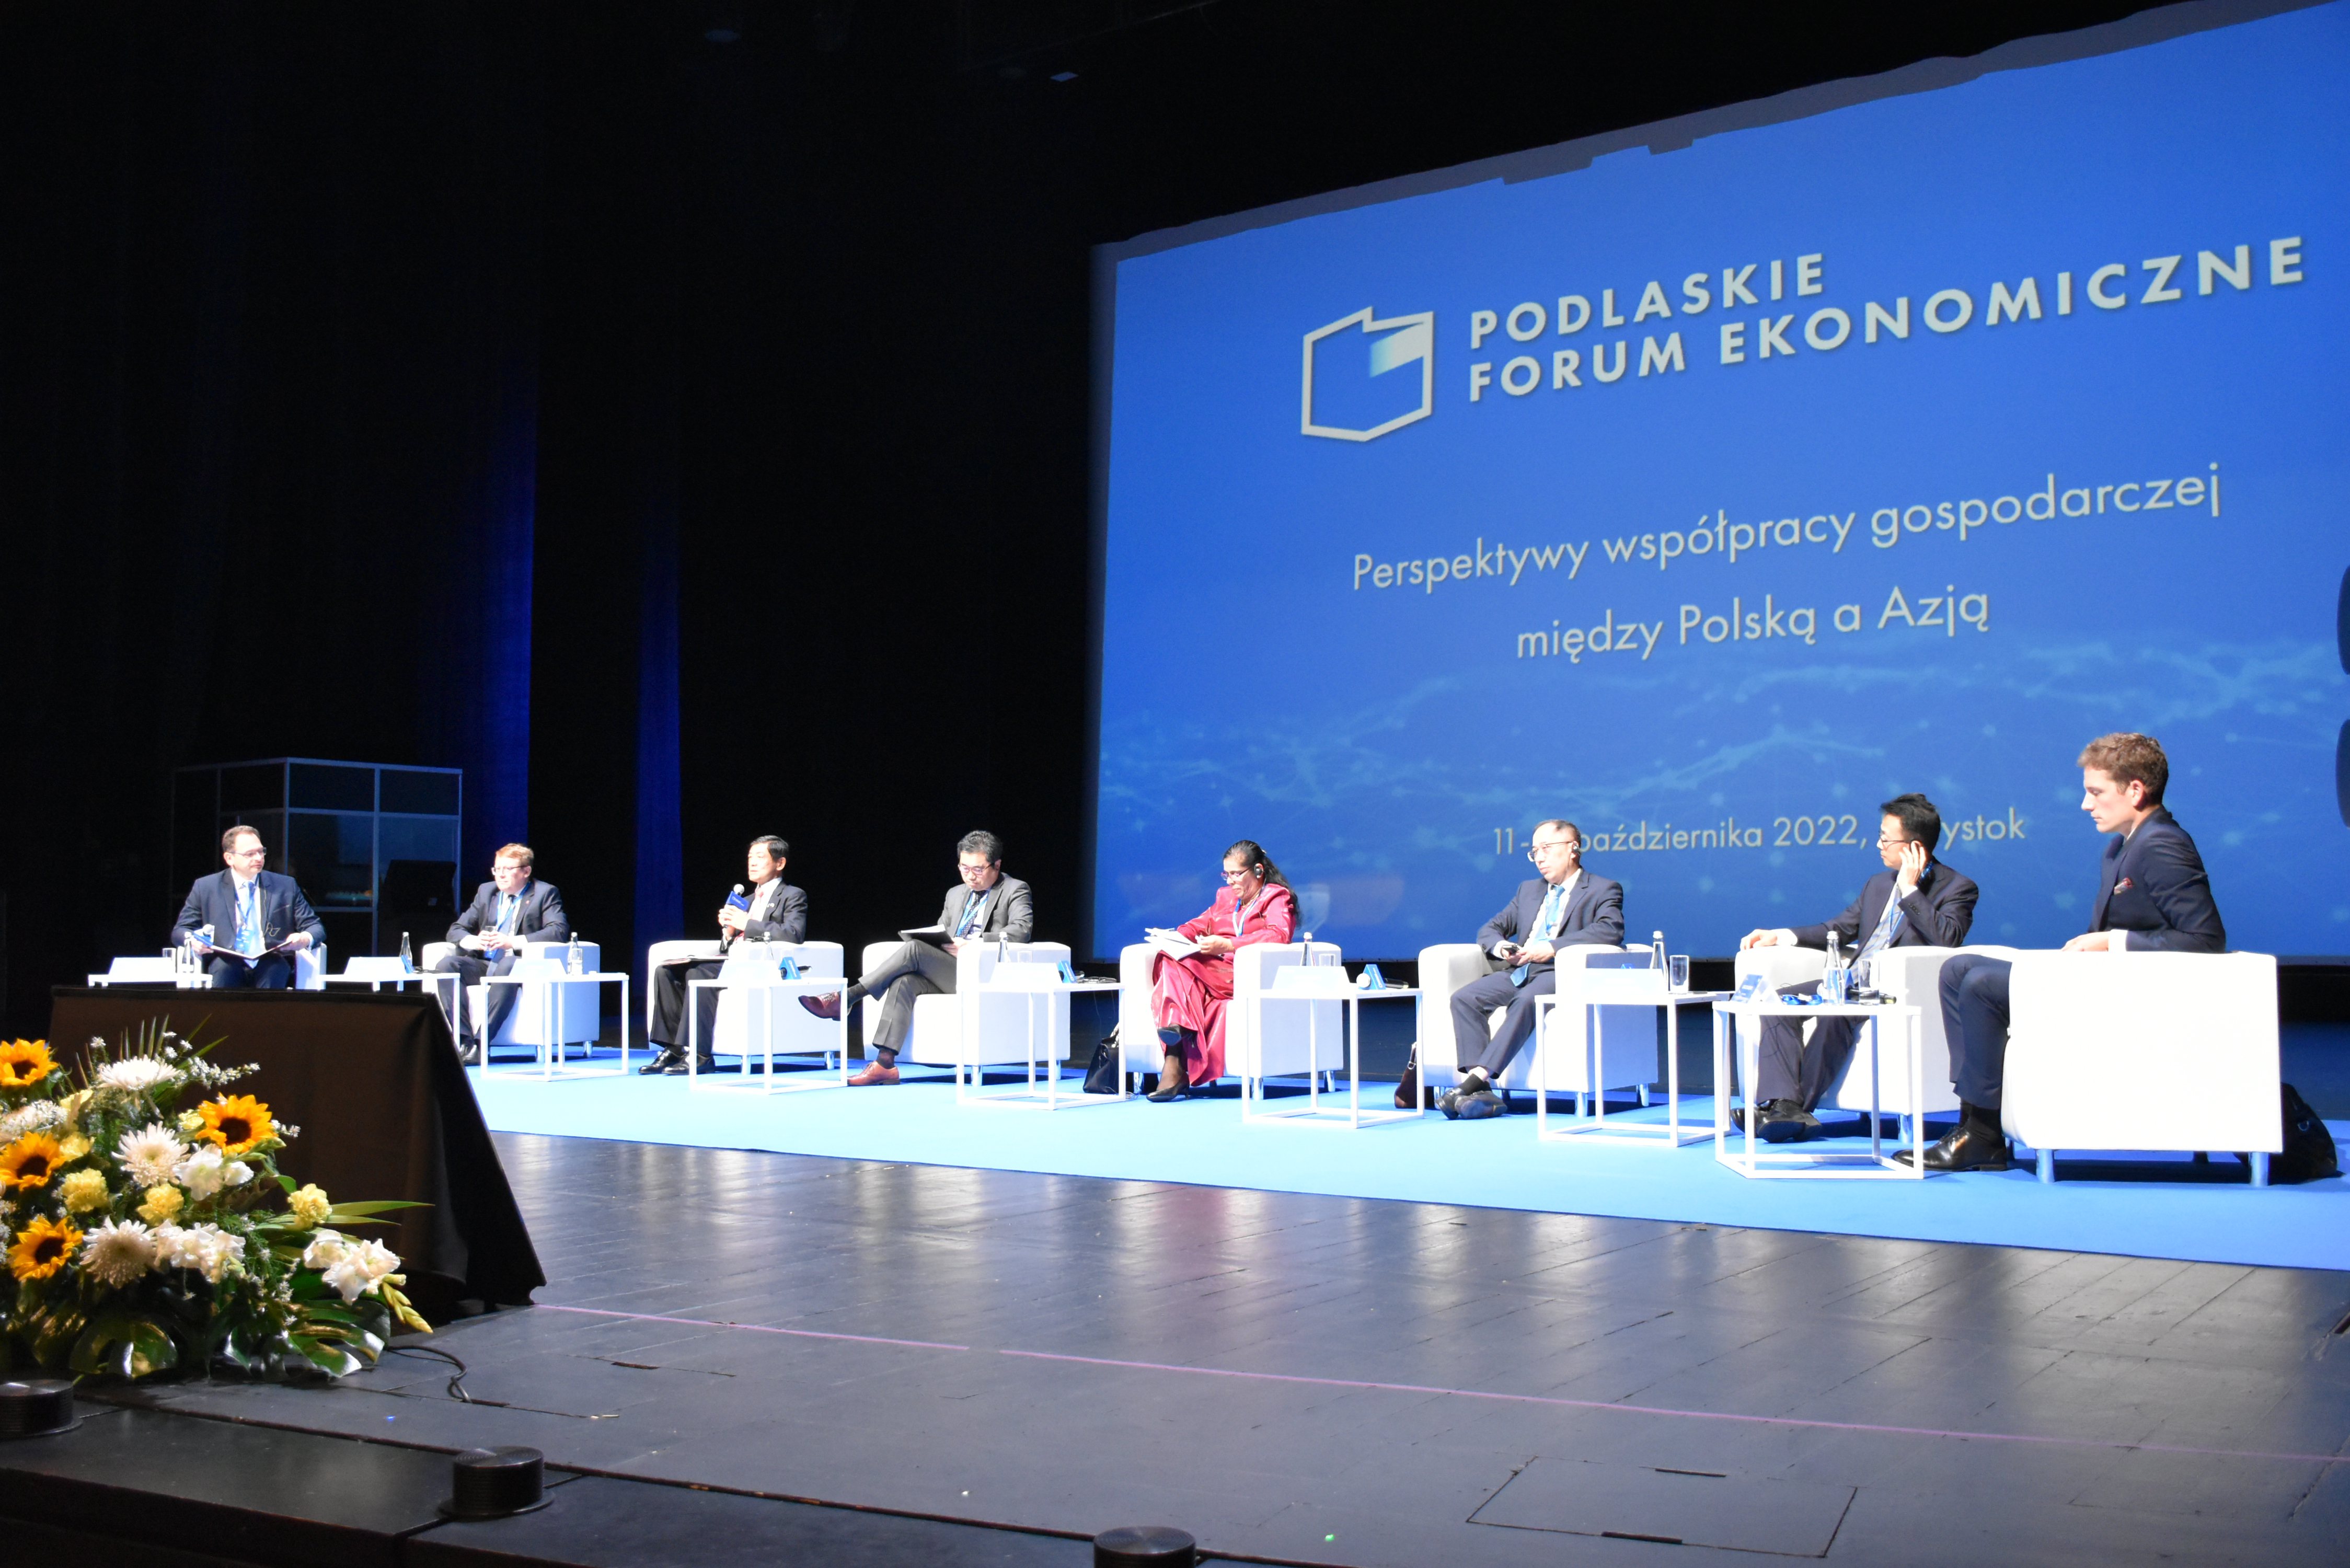 11.10.2022 r. Podlaskie Forum Ekonomiczne 2022; na zdjęciu: uczestnicy wydarzenia podczas panelu dyskusyjnego pn. Perspektywy współpracy gospodarczej między Polską a Azją